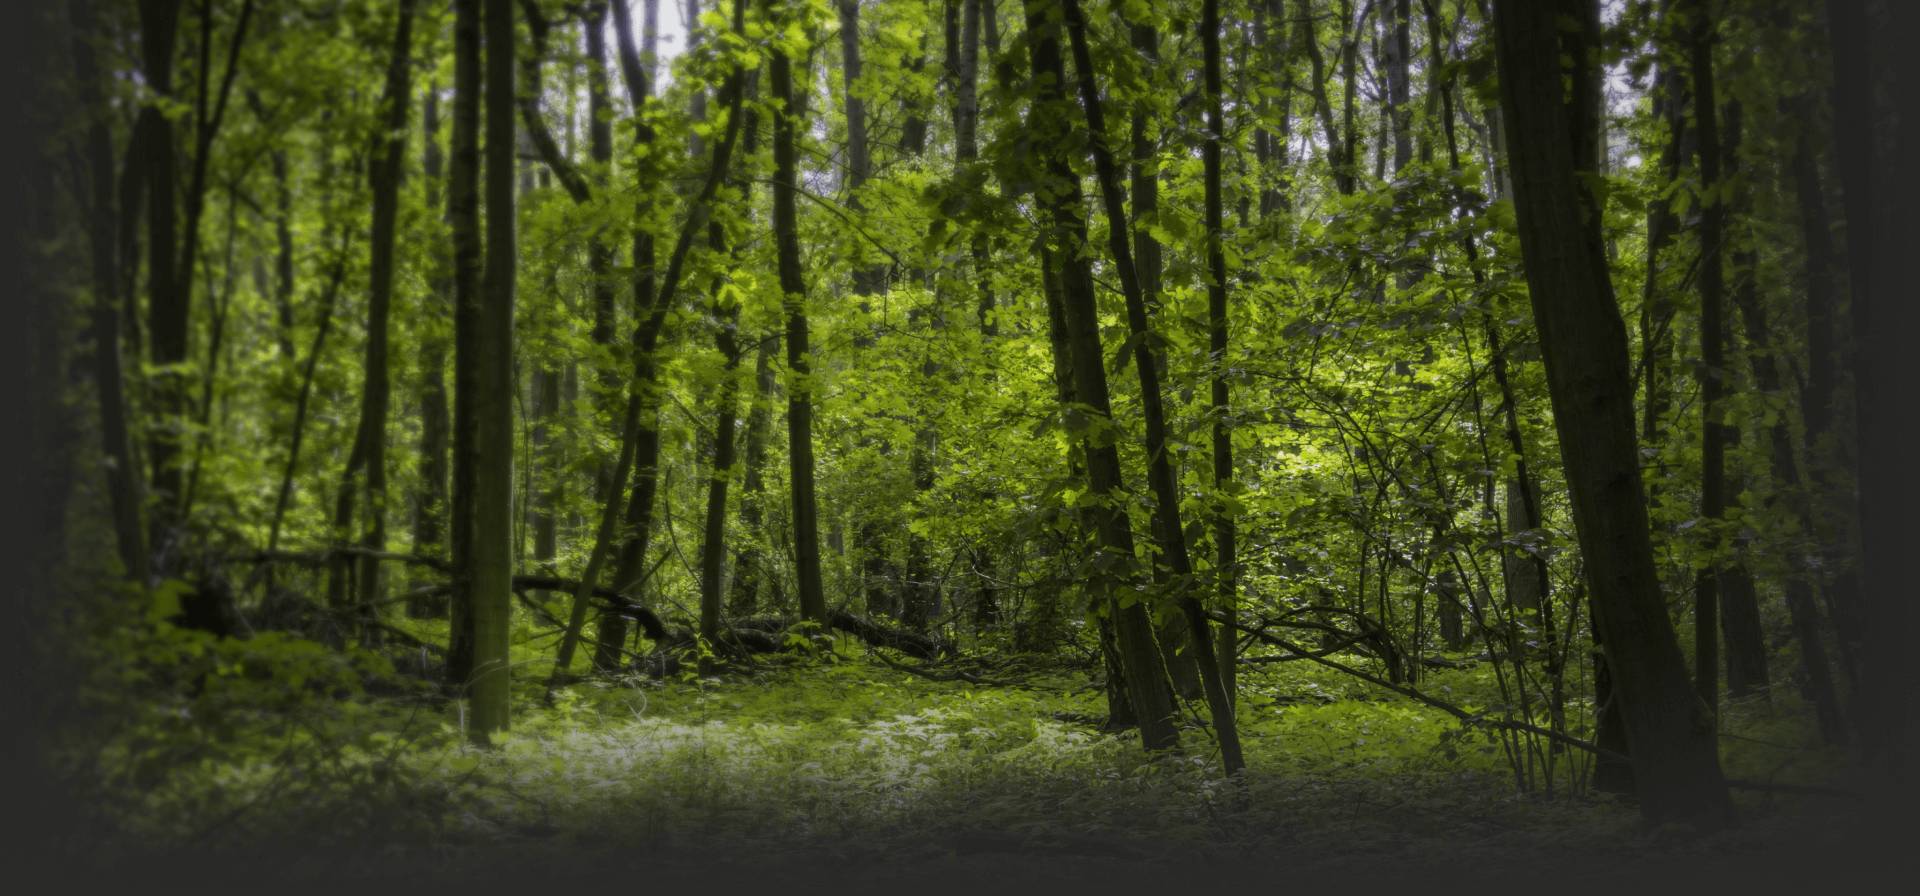 Forêt dense en végétation avec de grands arbres feuillus et de petites plantes vertes. 